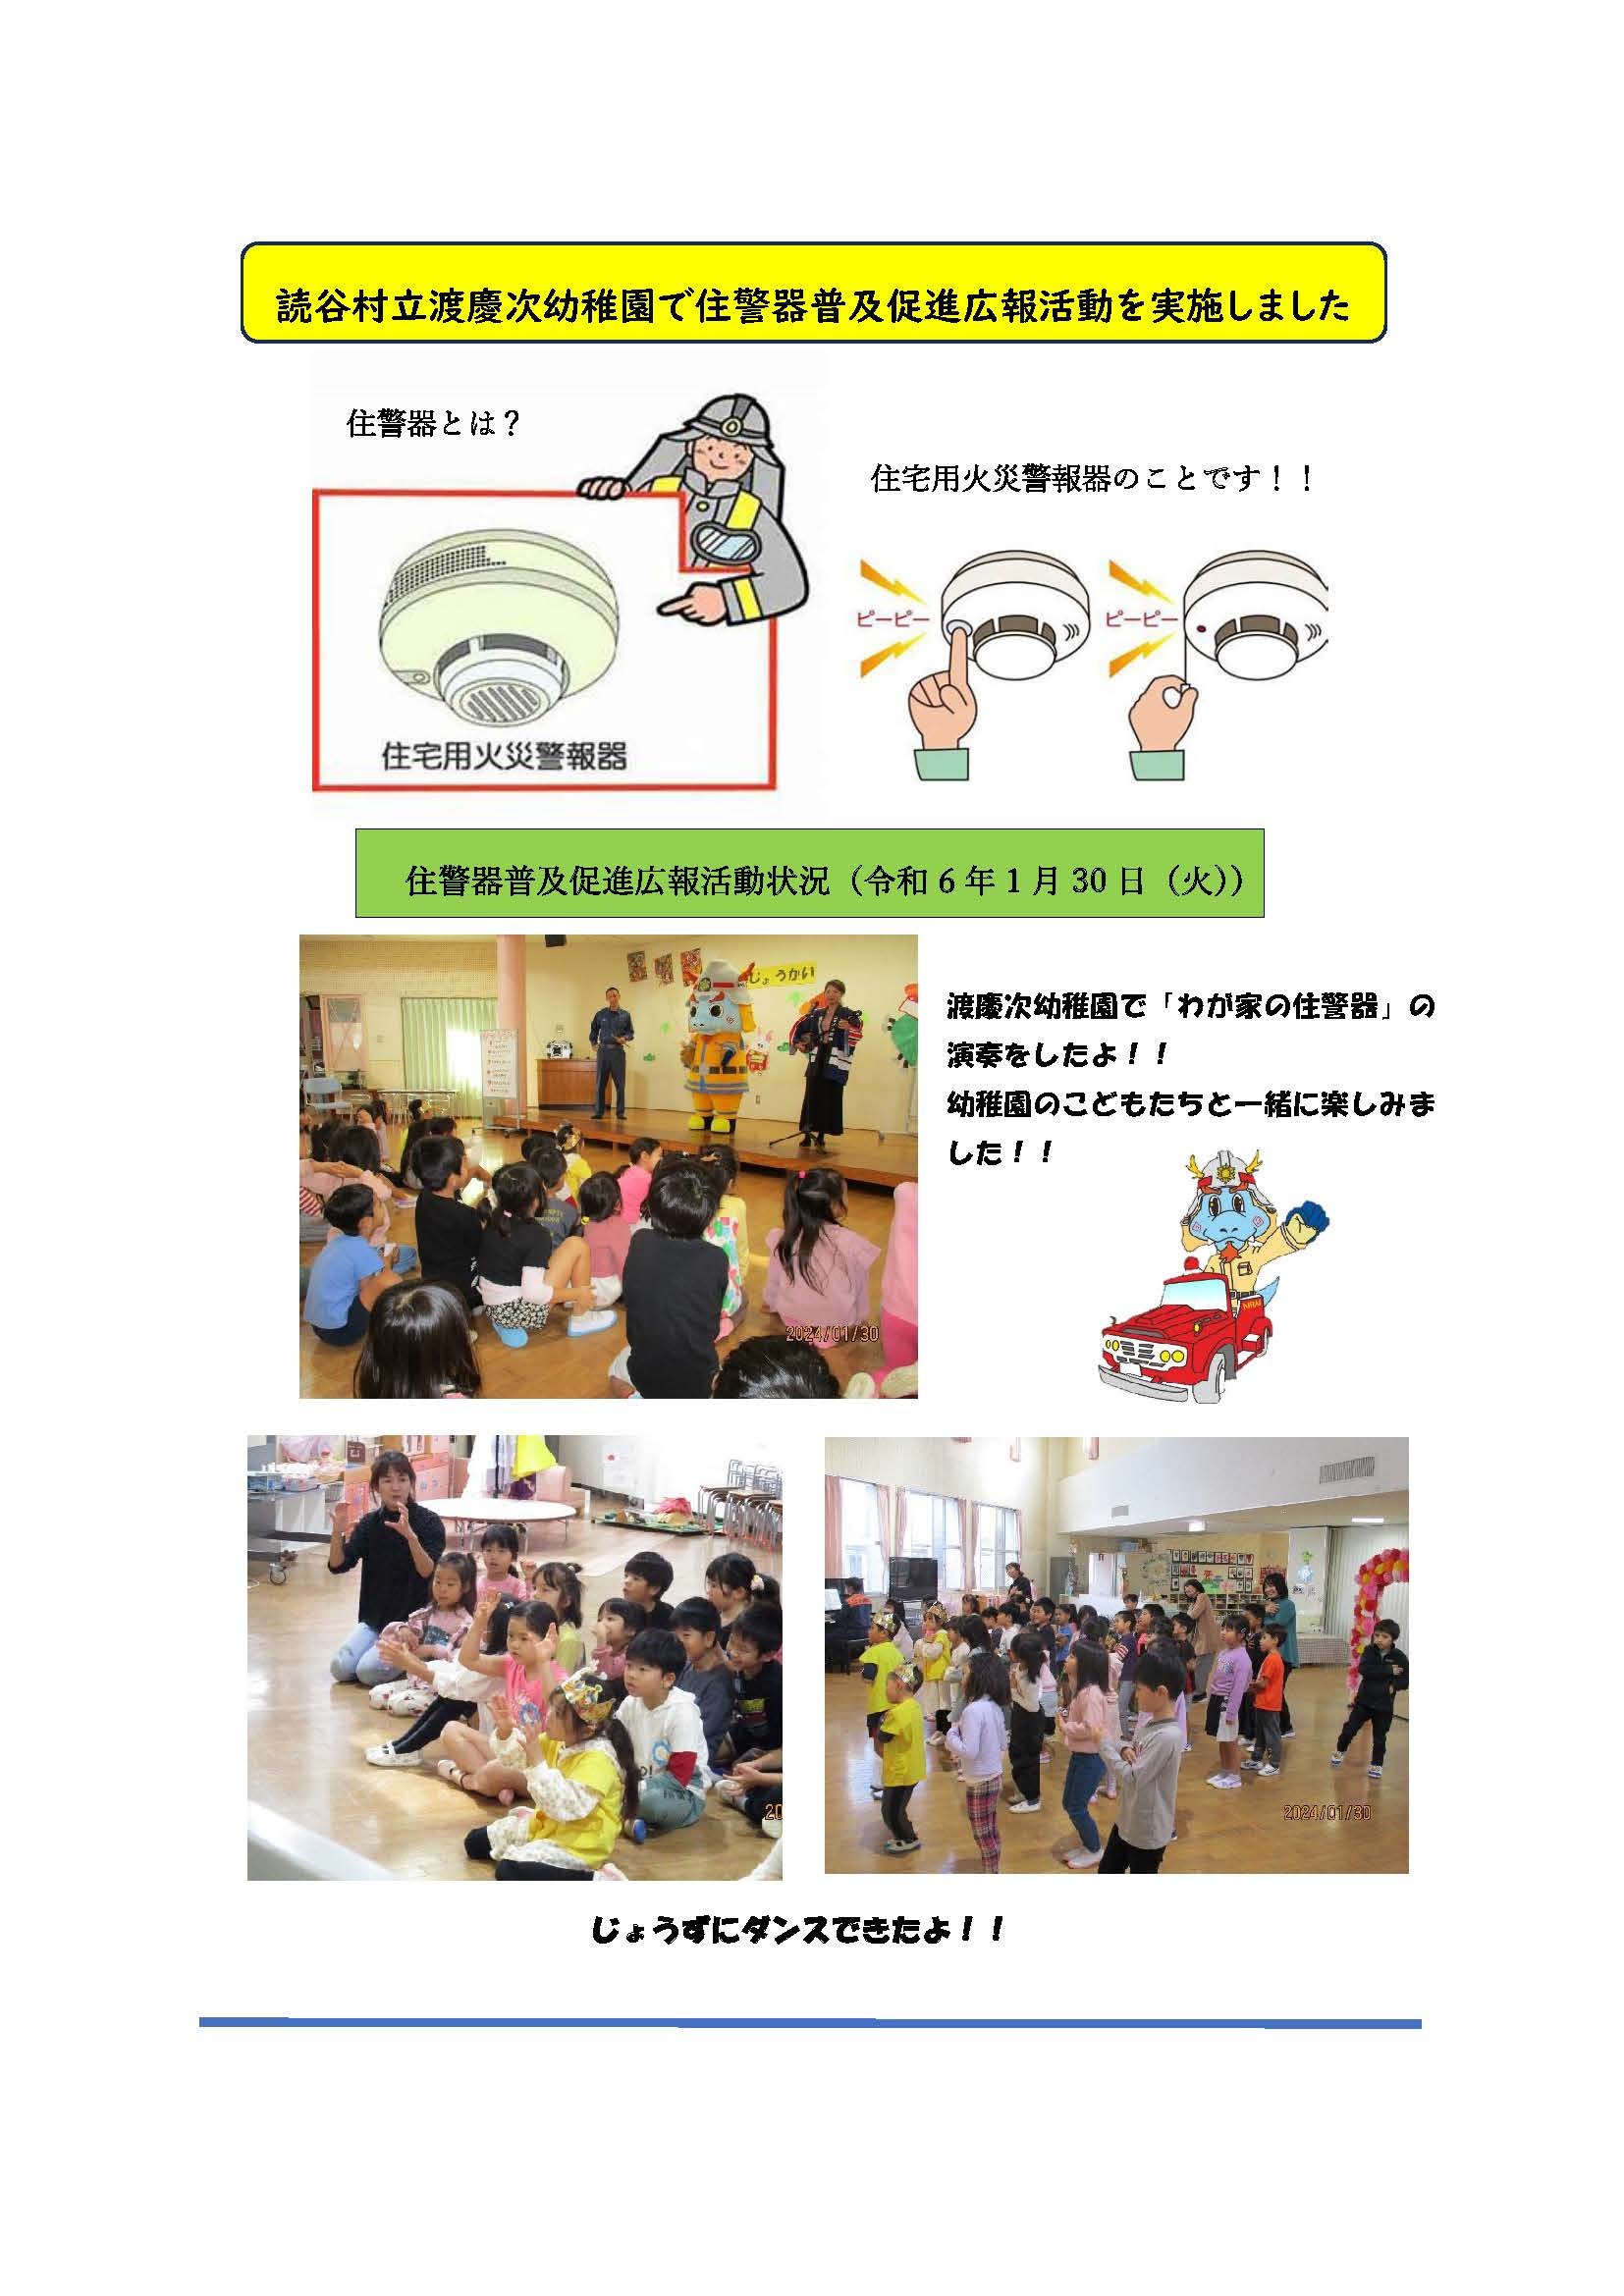 資料2　読谷渡慶次幼稚園で住警器普及促進広報活動を実施しました_ページ_1.jpg